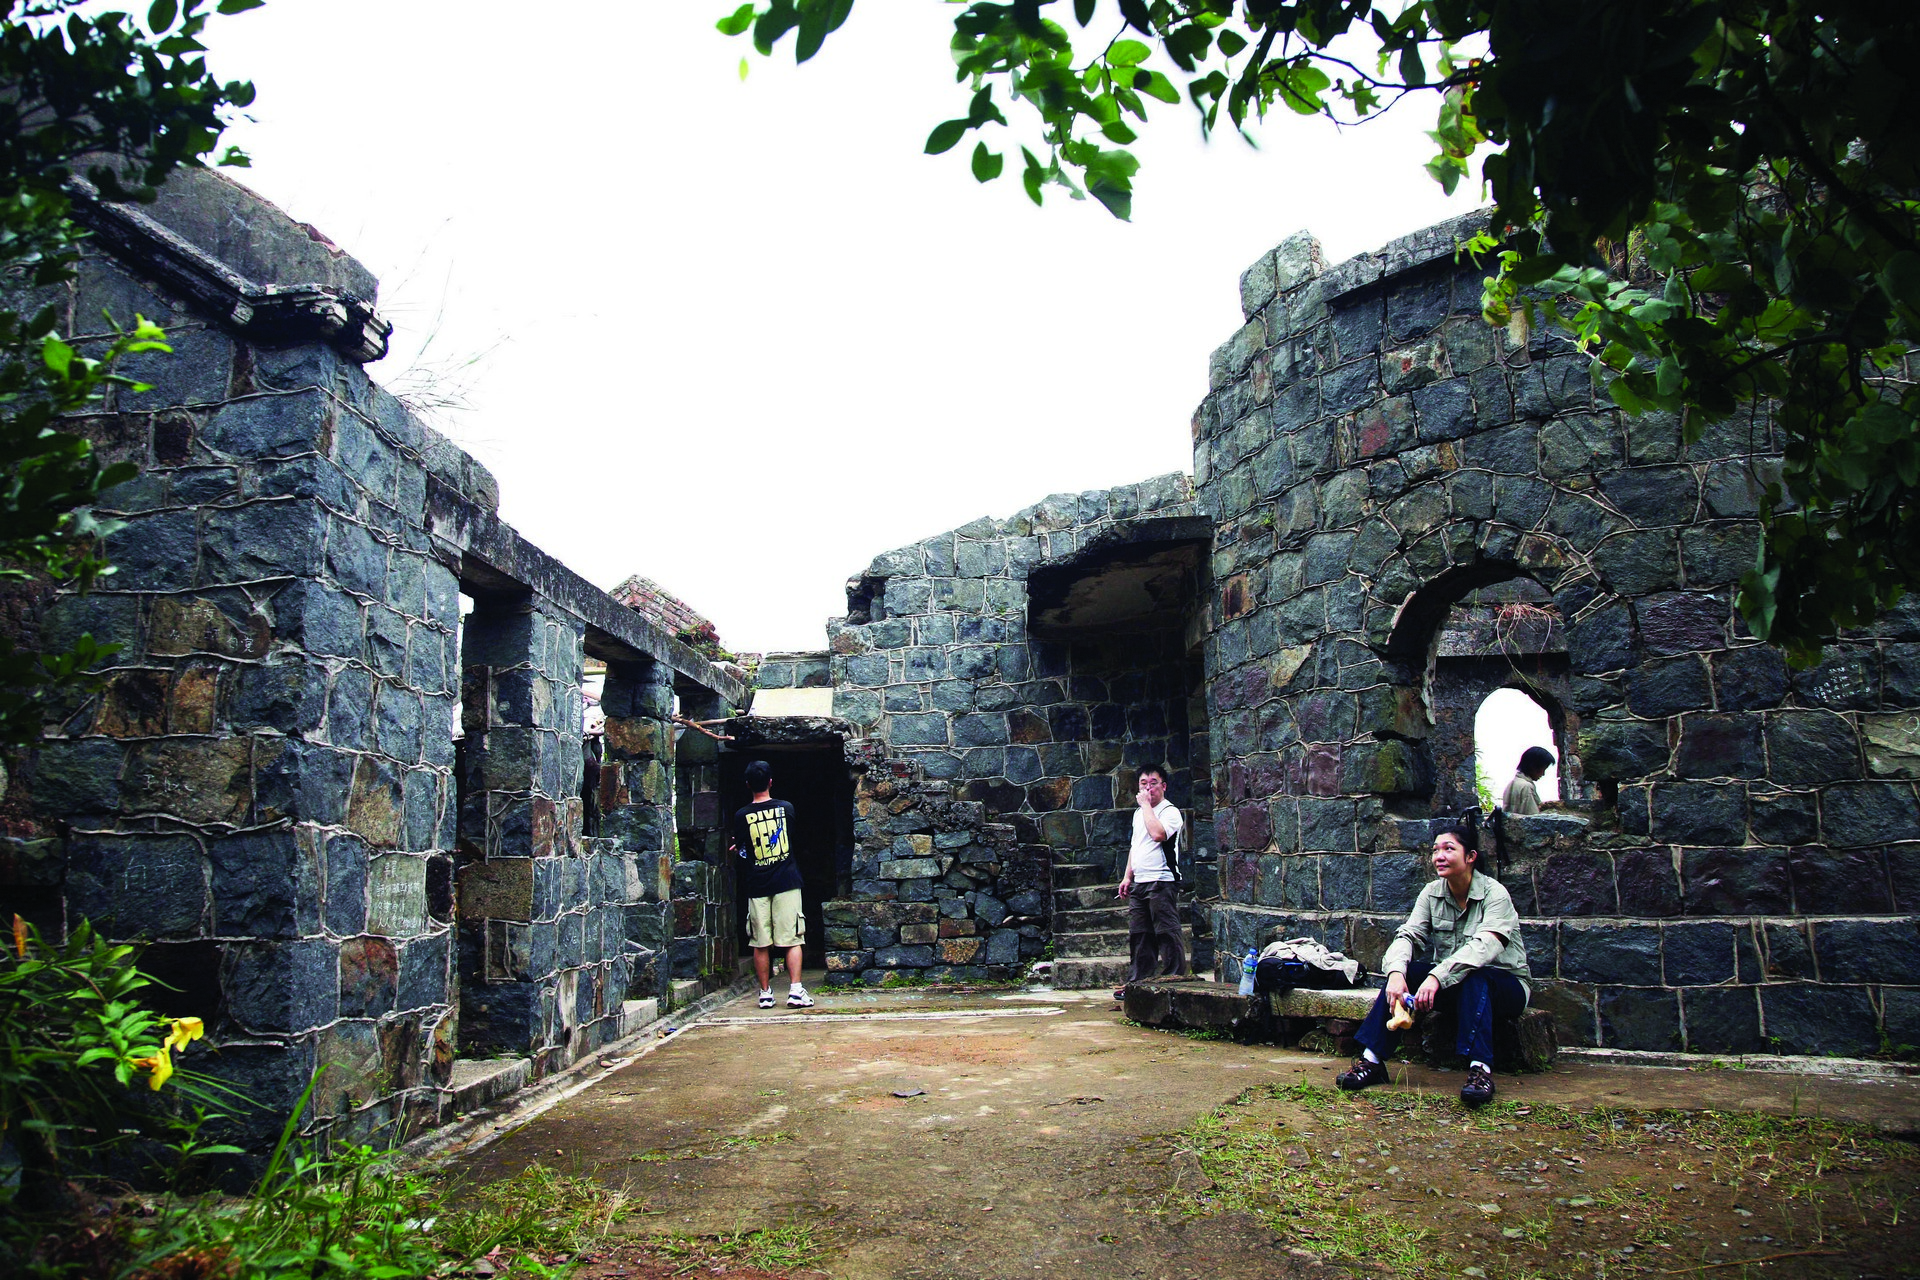 遊人到此遊覽的興致不遜於對岸由碉堡改建的海防博物館。